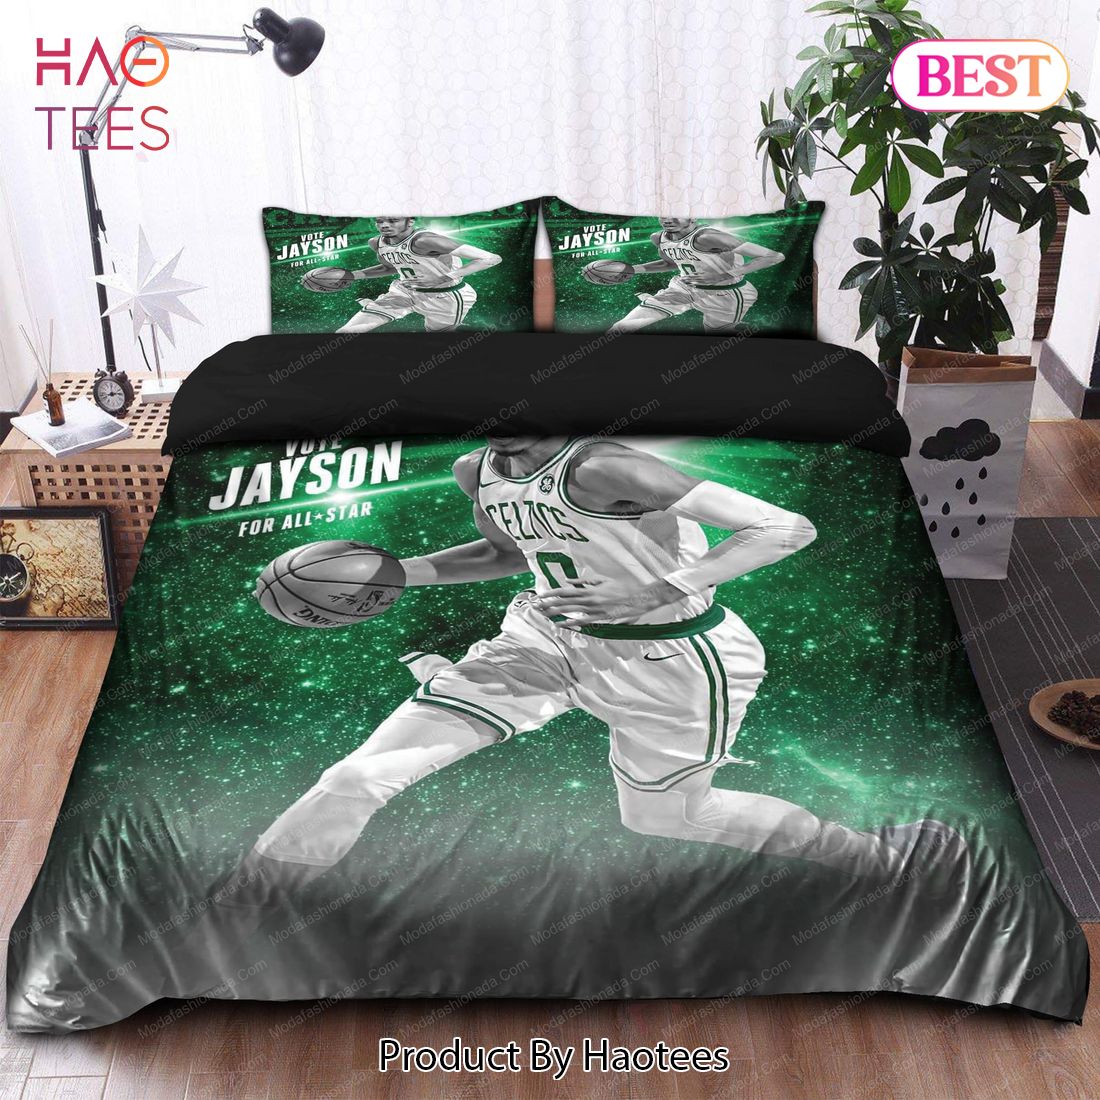 Buy Jayson Tatum Boston Celtics NBA 137 Bedding Sets Bed Sets, Bedroom Sets, Comforter Sets, Duvet Cover, Bedspread